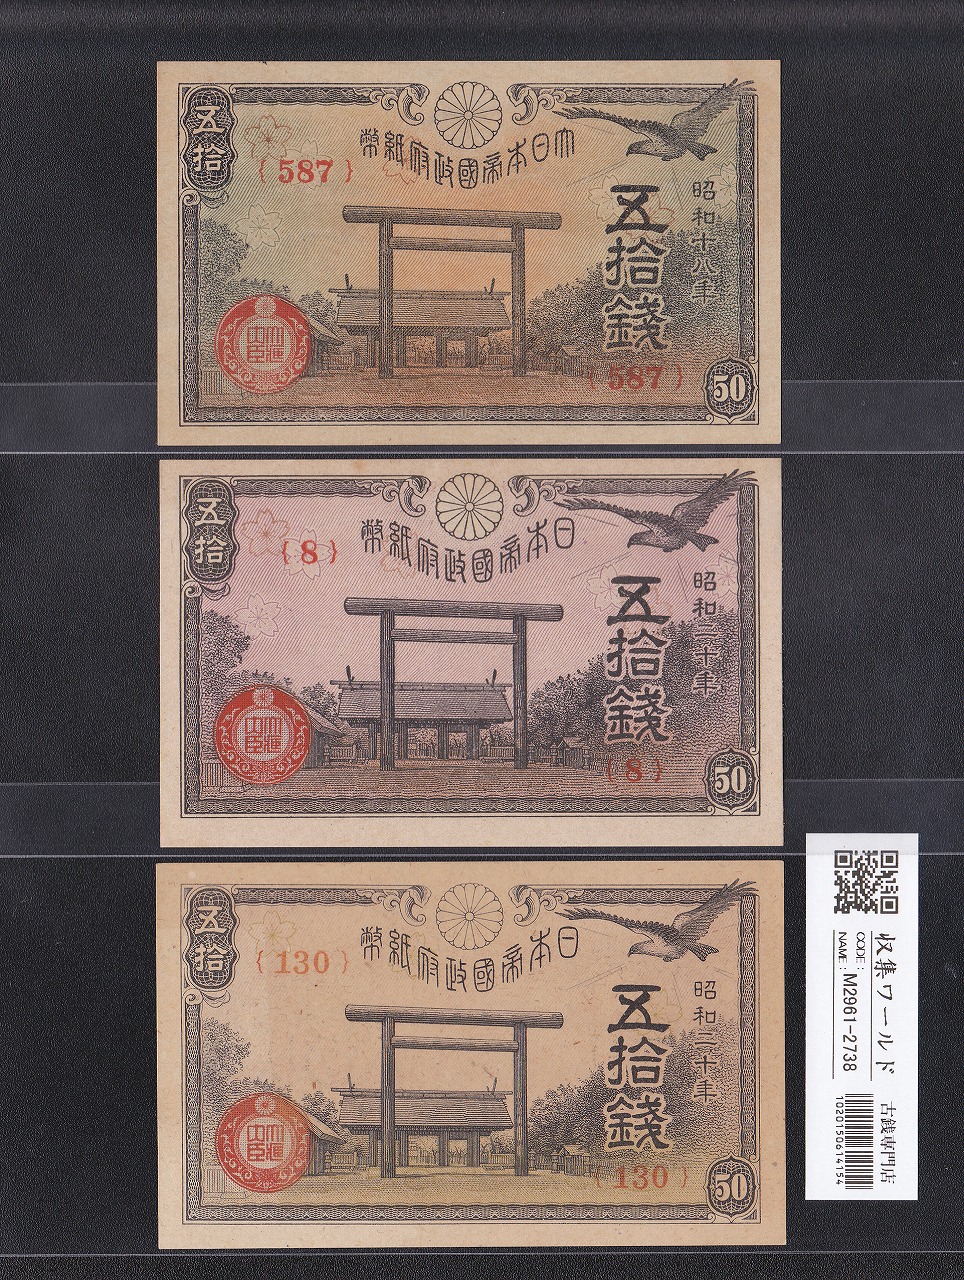 靖国 50銭 日本政府紙幣 No.130 印刷漏れエラー券 1945年 未使用3枚セット